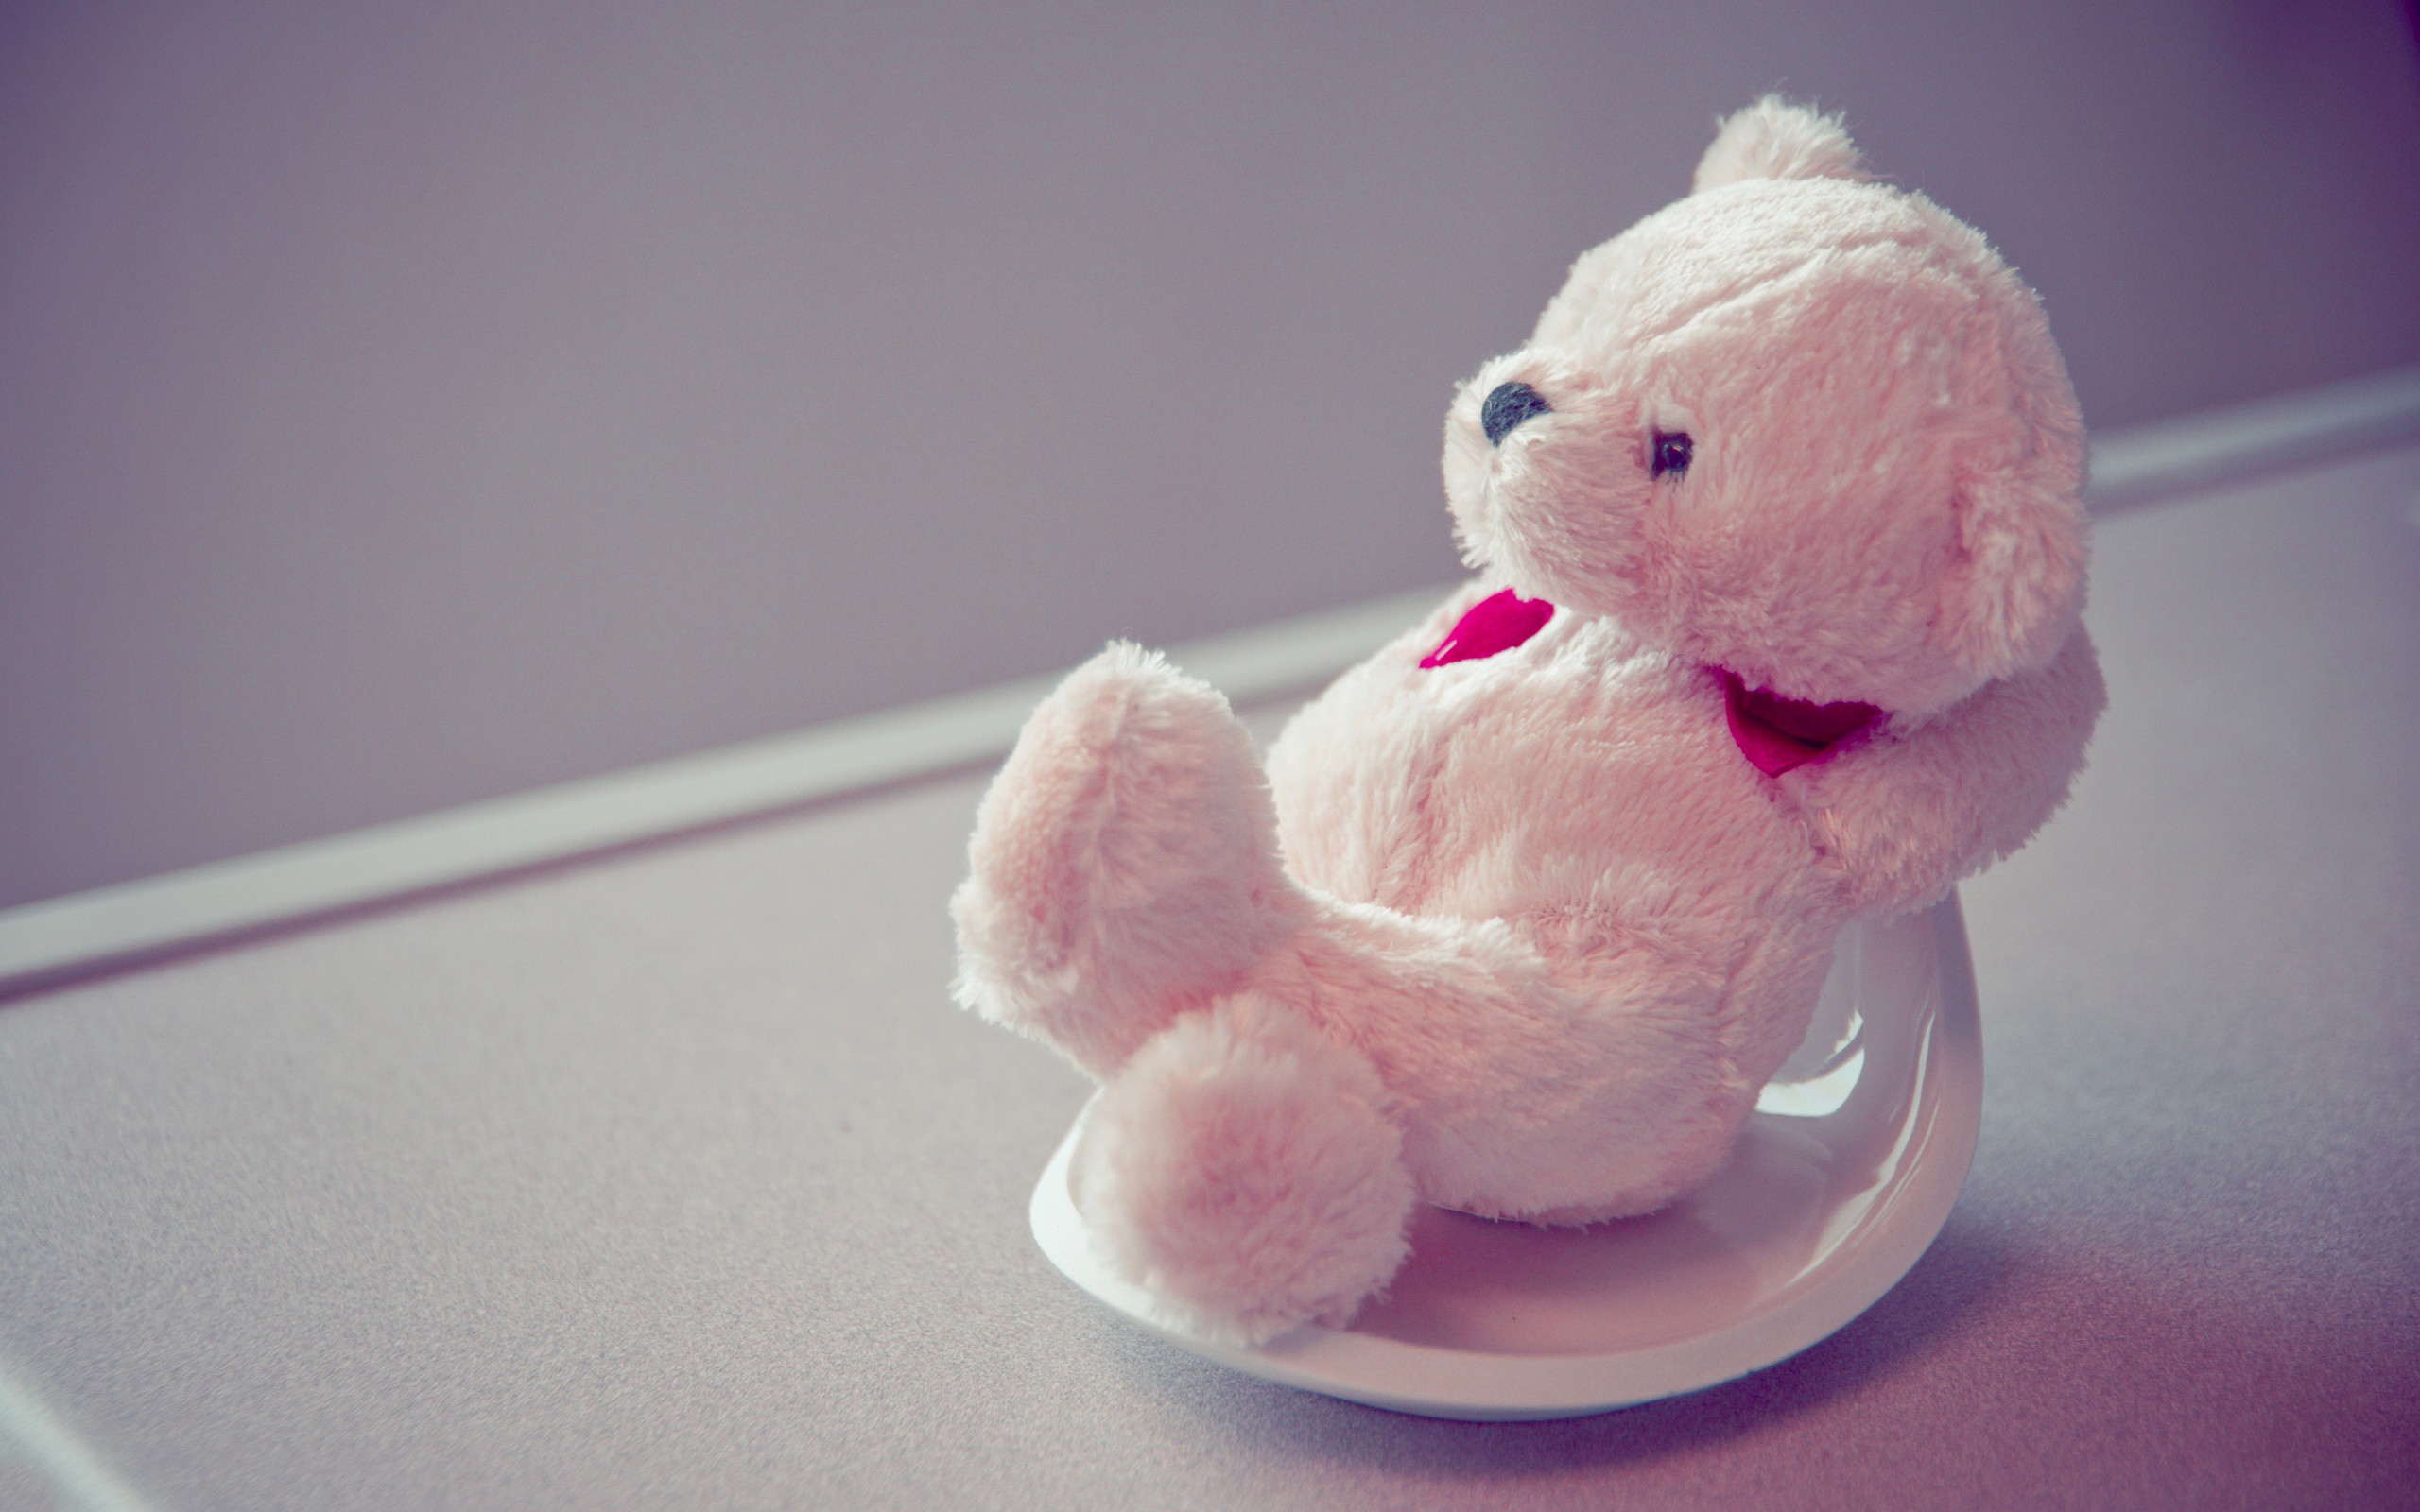 cute love teddy bears for facebook timeline